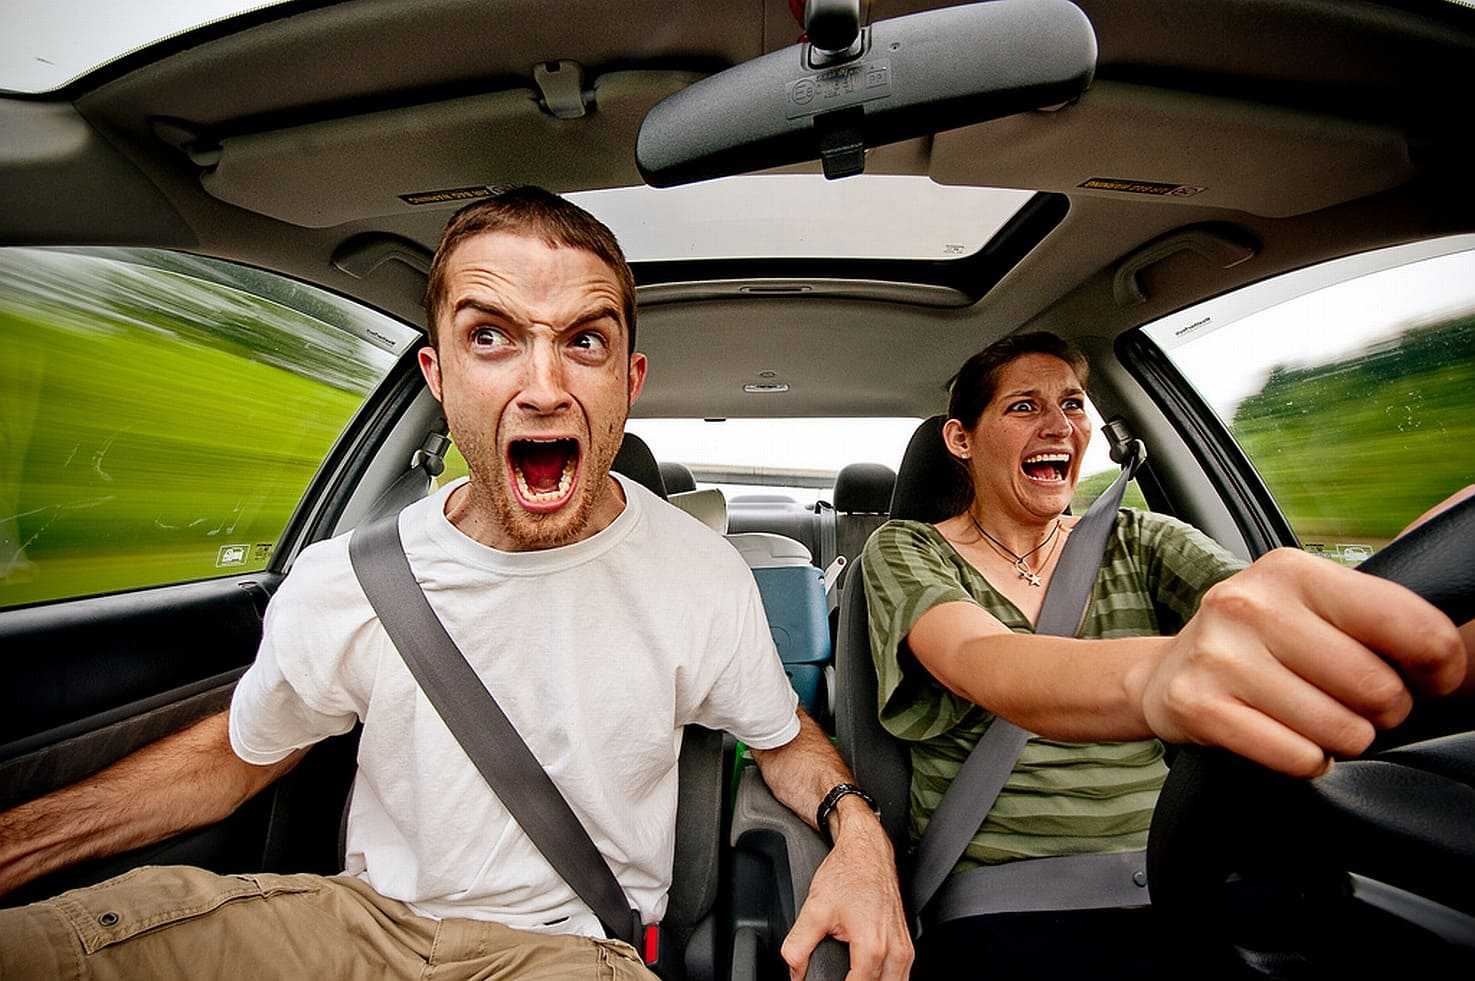 Амаксофобия страх вождения автомобиля и боязнь транспорта